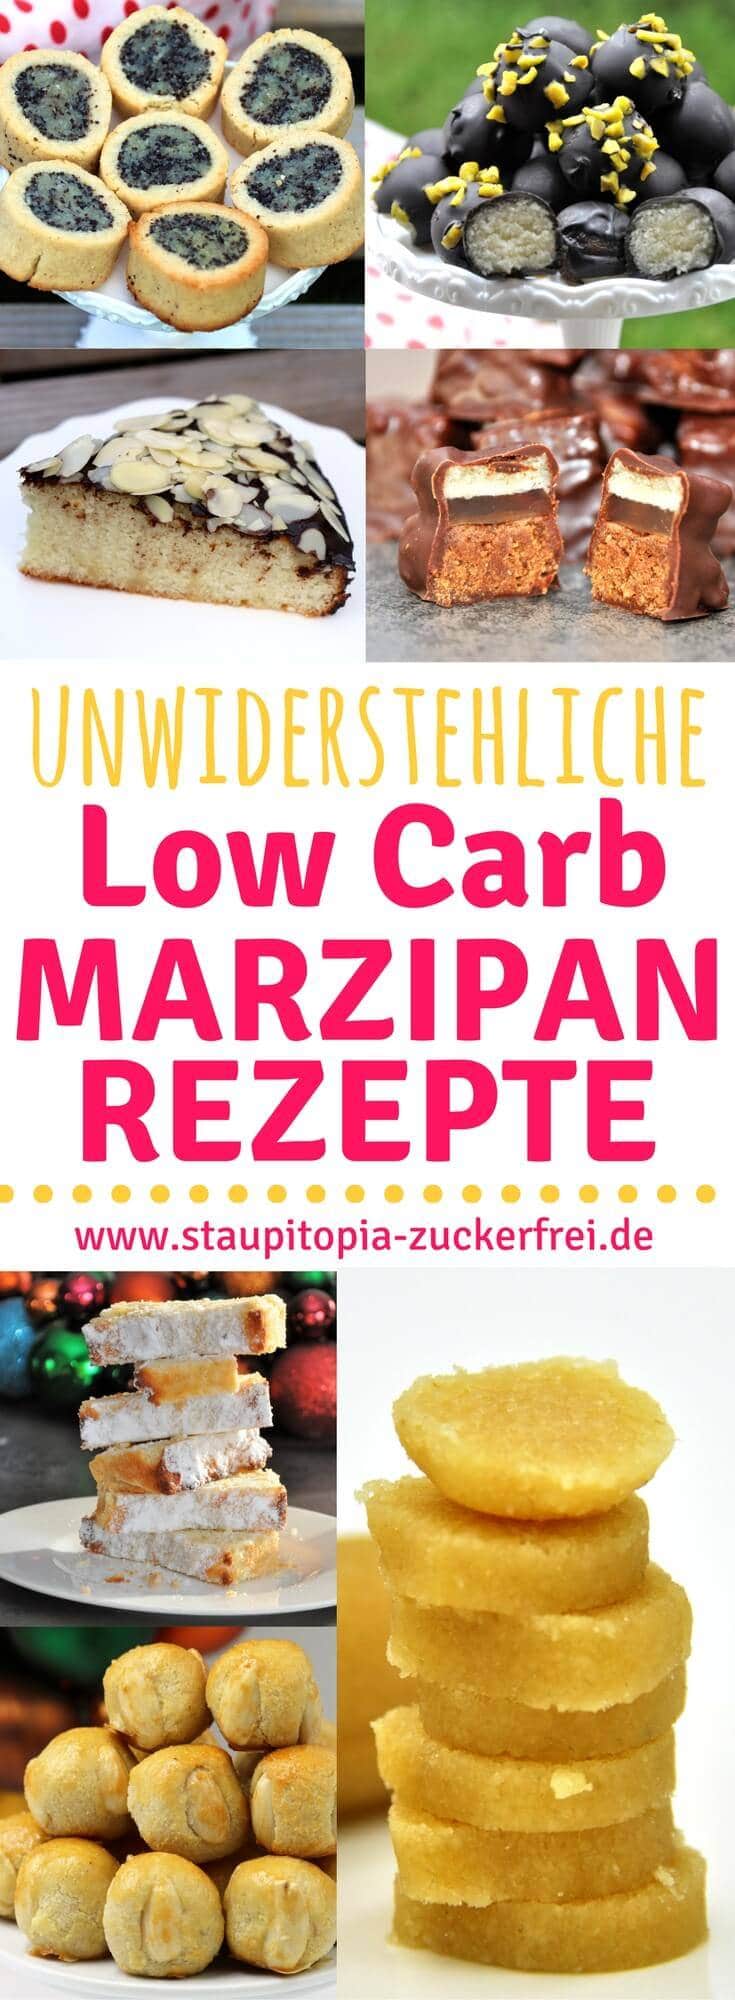 Low Carb Marzipan Rezepte kann es nicht genug geben. Du backst auch gerne mit Marzipan? Diese Low Carb Marzipan Rezepte werden dich begeistern.